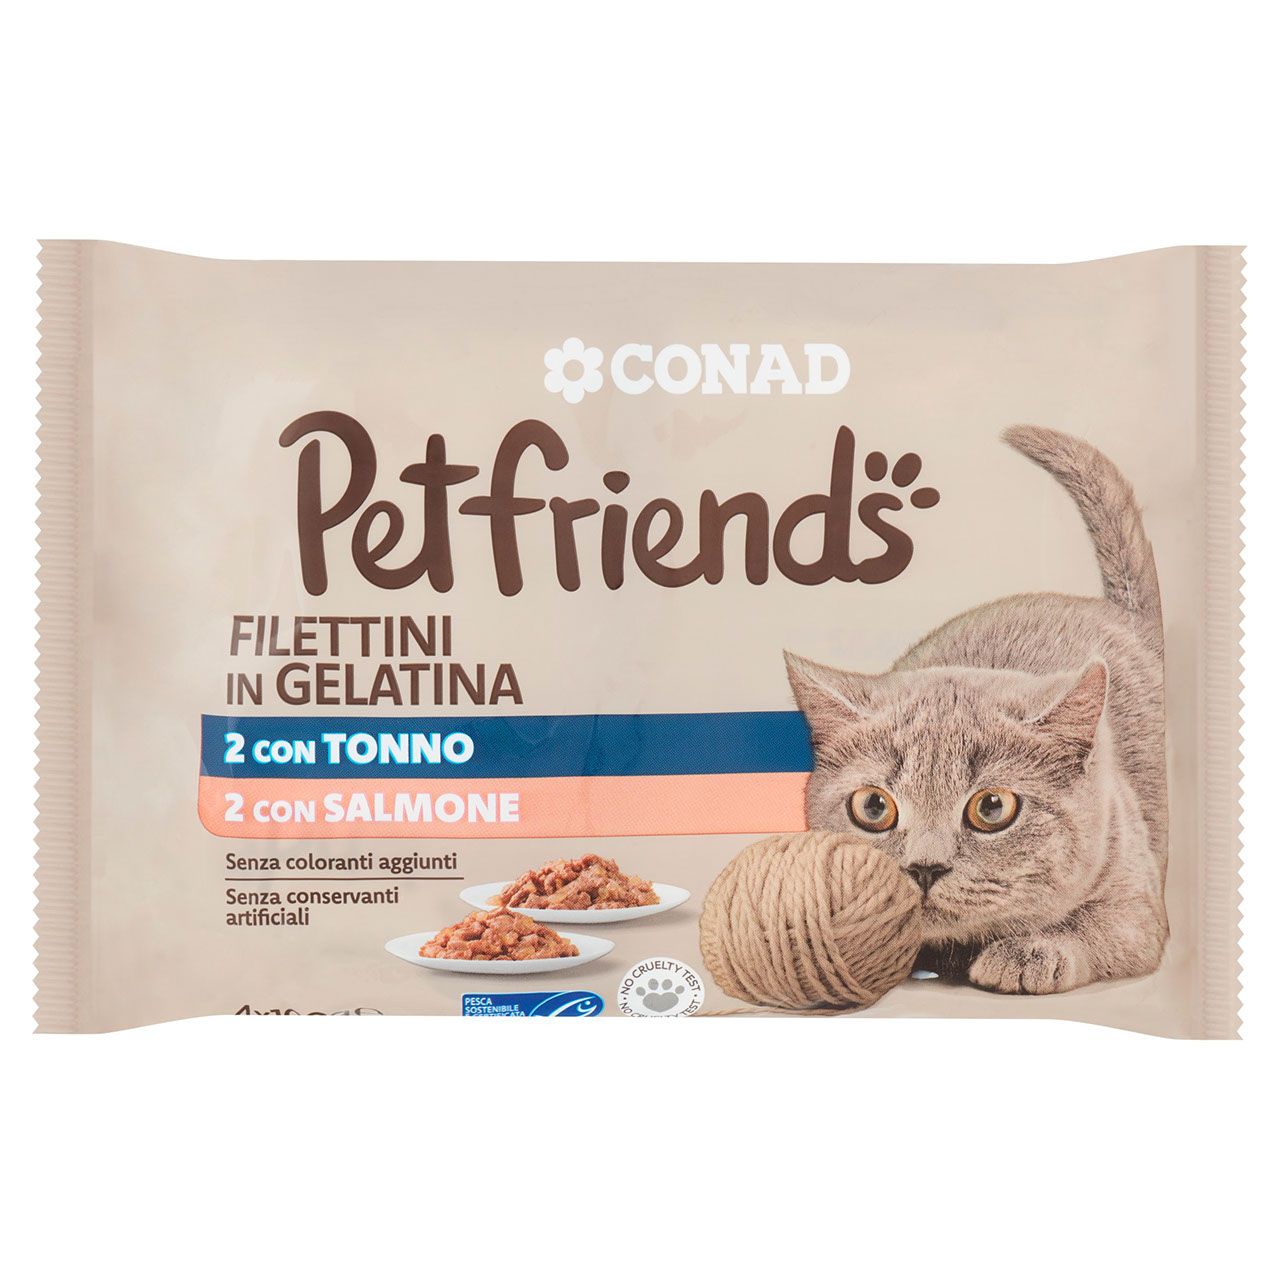 Petfriends Filettini Tonno Salmone 4 x 100 g Conad